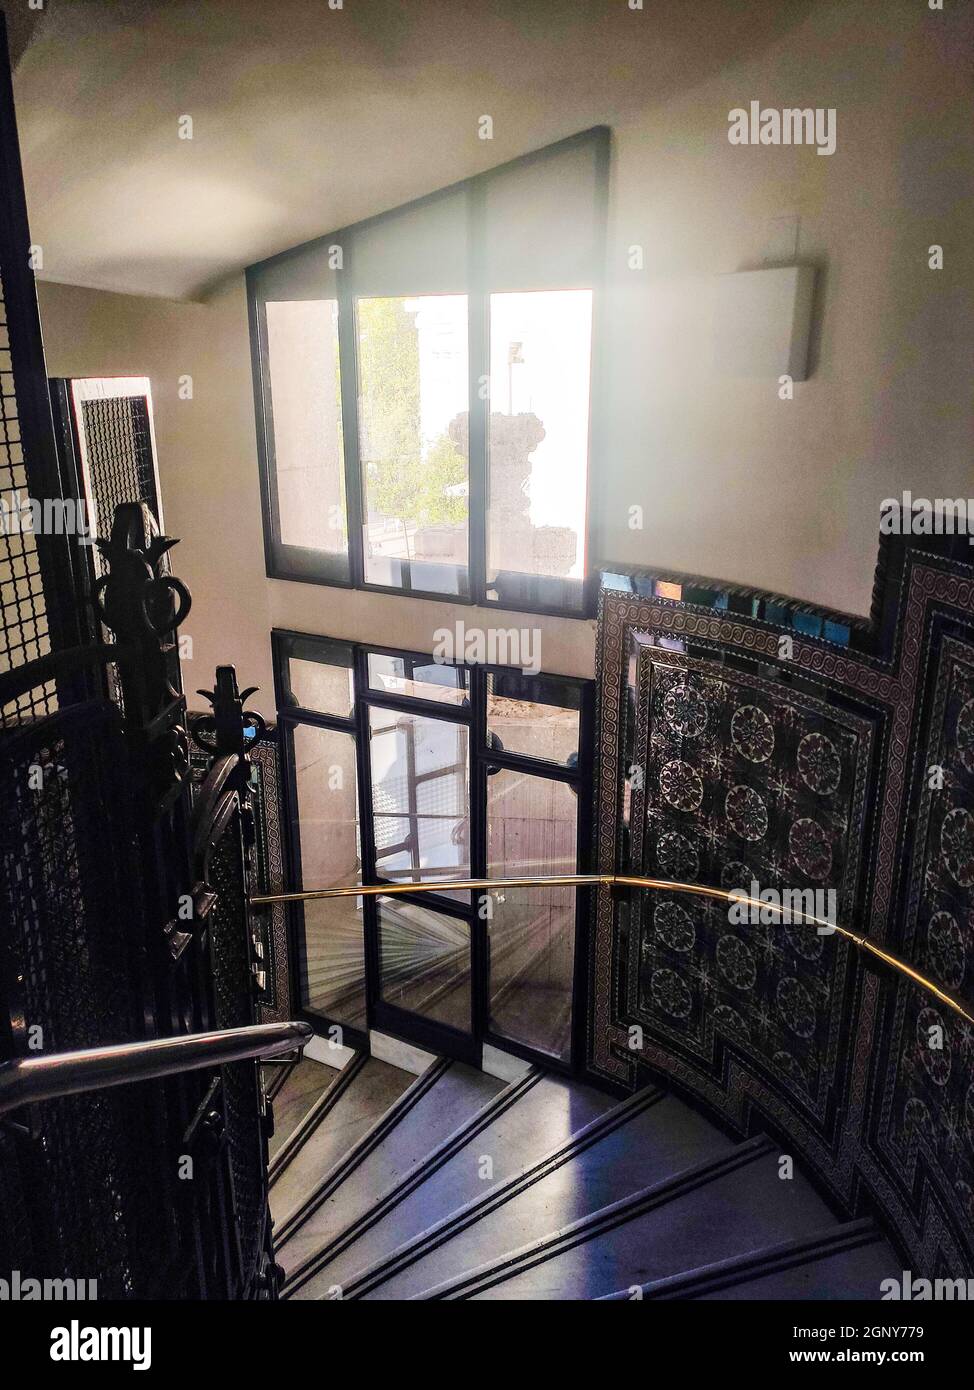 Escalera con azulejos de cerámica pintados a mano utilizada por una escalera interior del Palacio de Cibeles Foto de stock